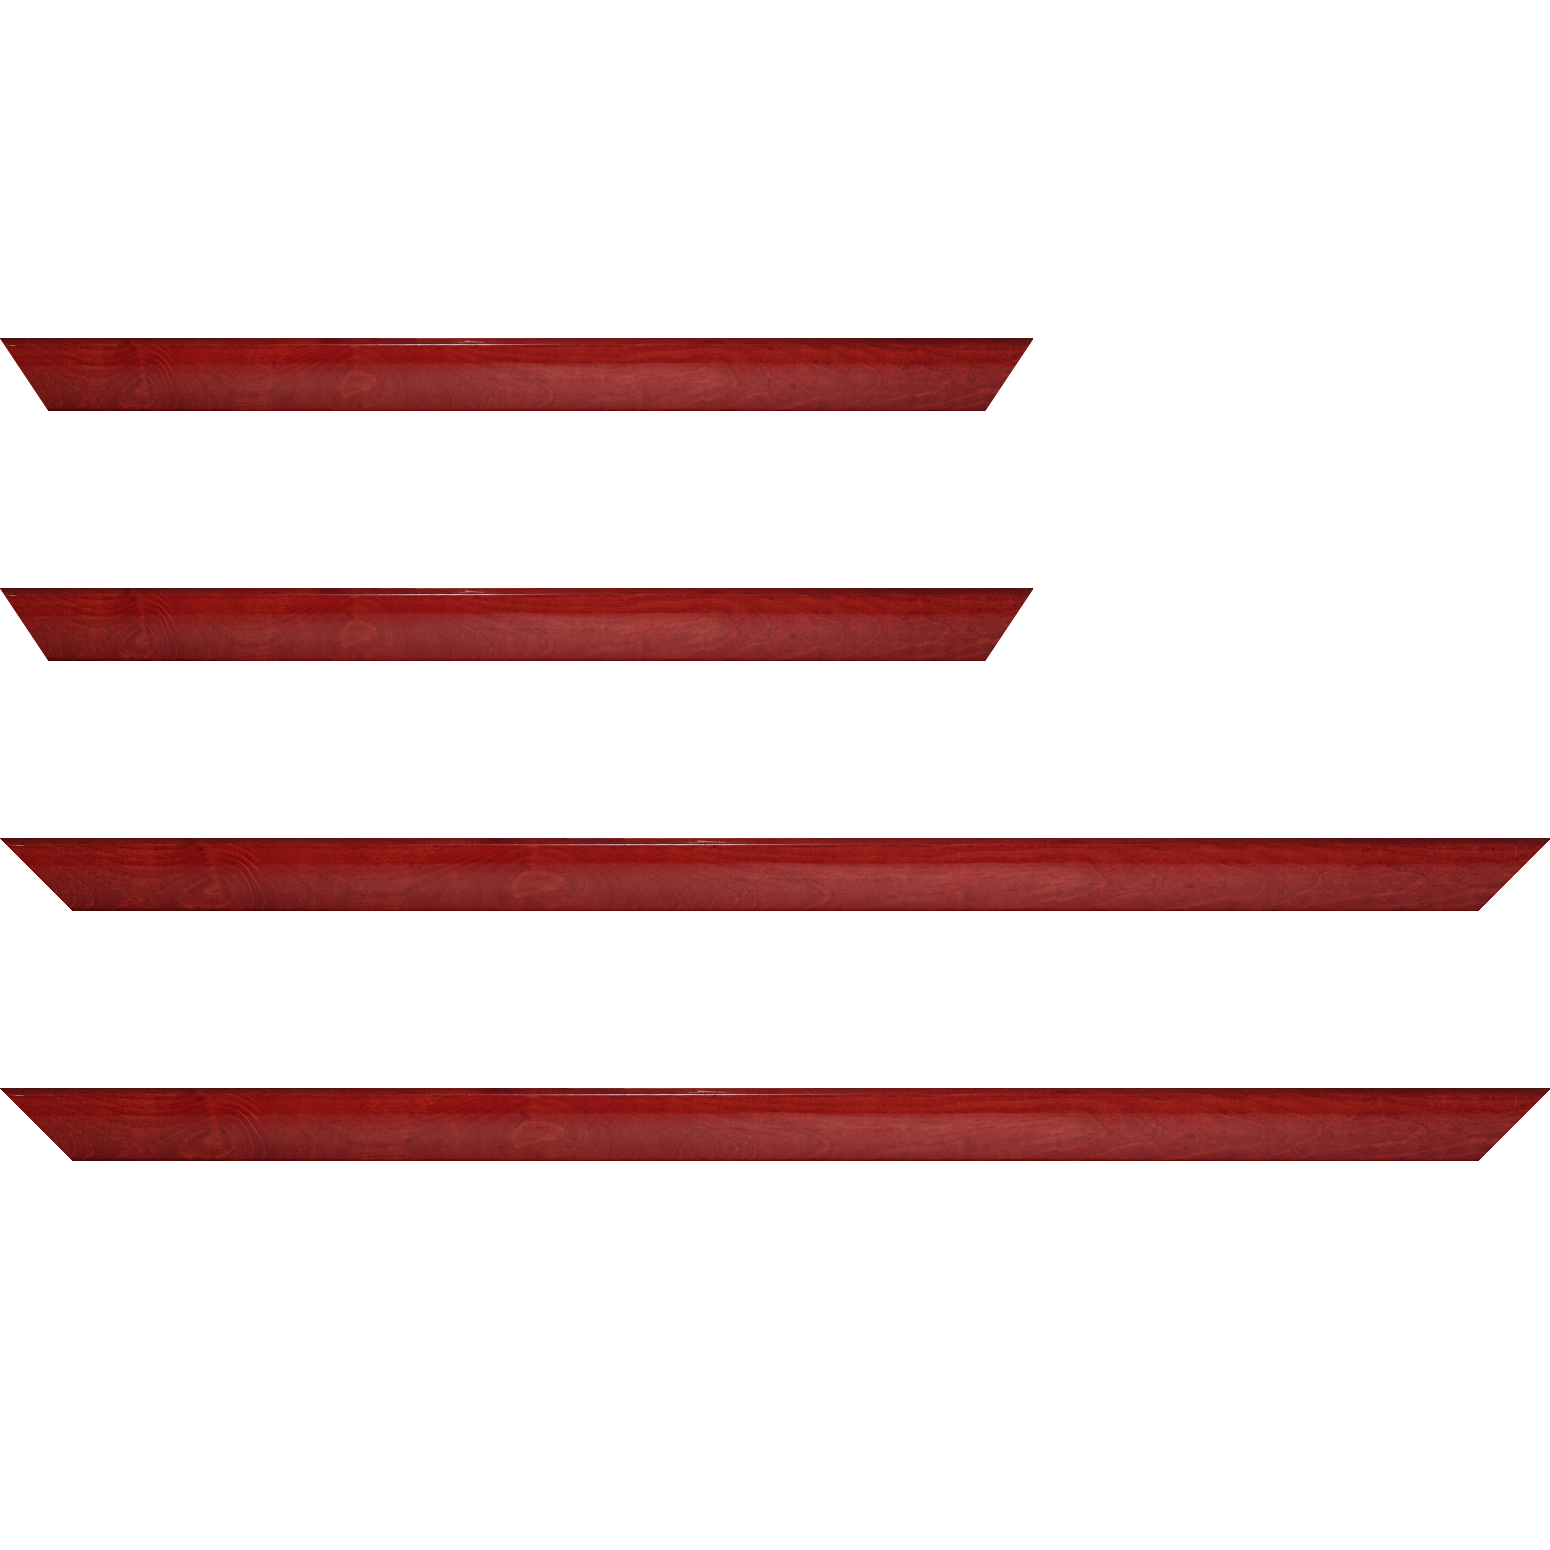 Baguette bois profil arrondi en pente plongeant largeur 2.4cm couleur rouge cerise finition vernis brillant,veine du bois  apparent (pin) , - 25x25